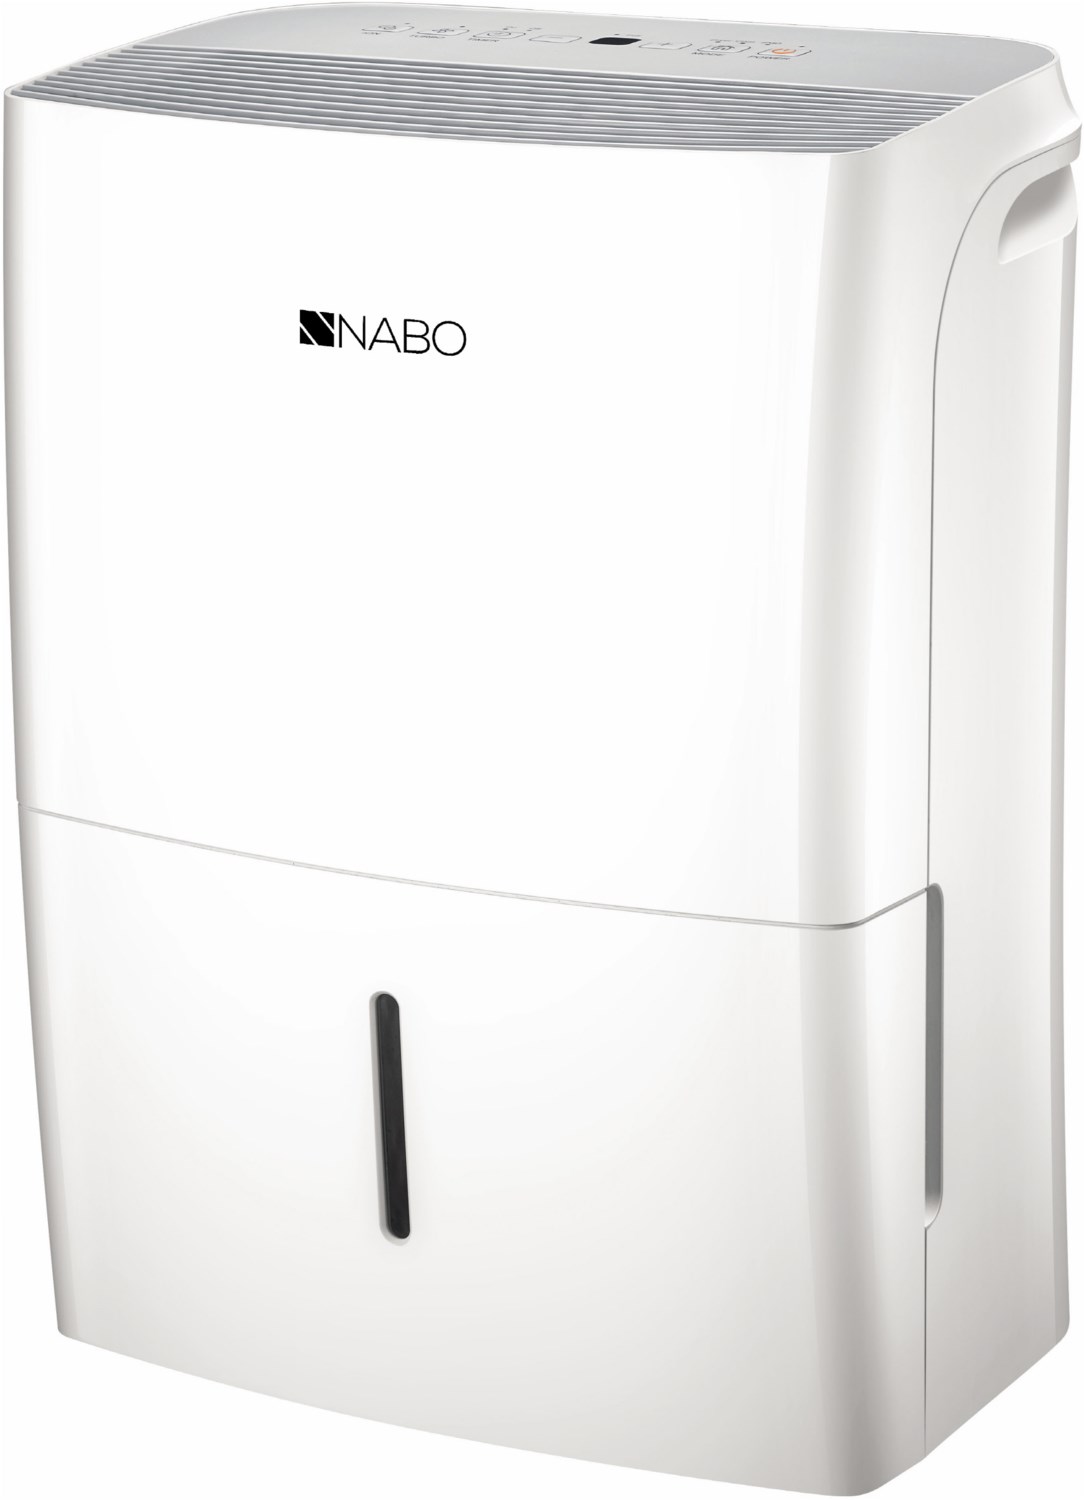 NABO EF 1610 - Produktbild